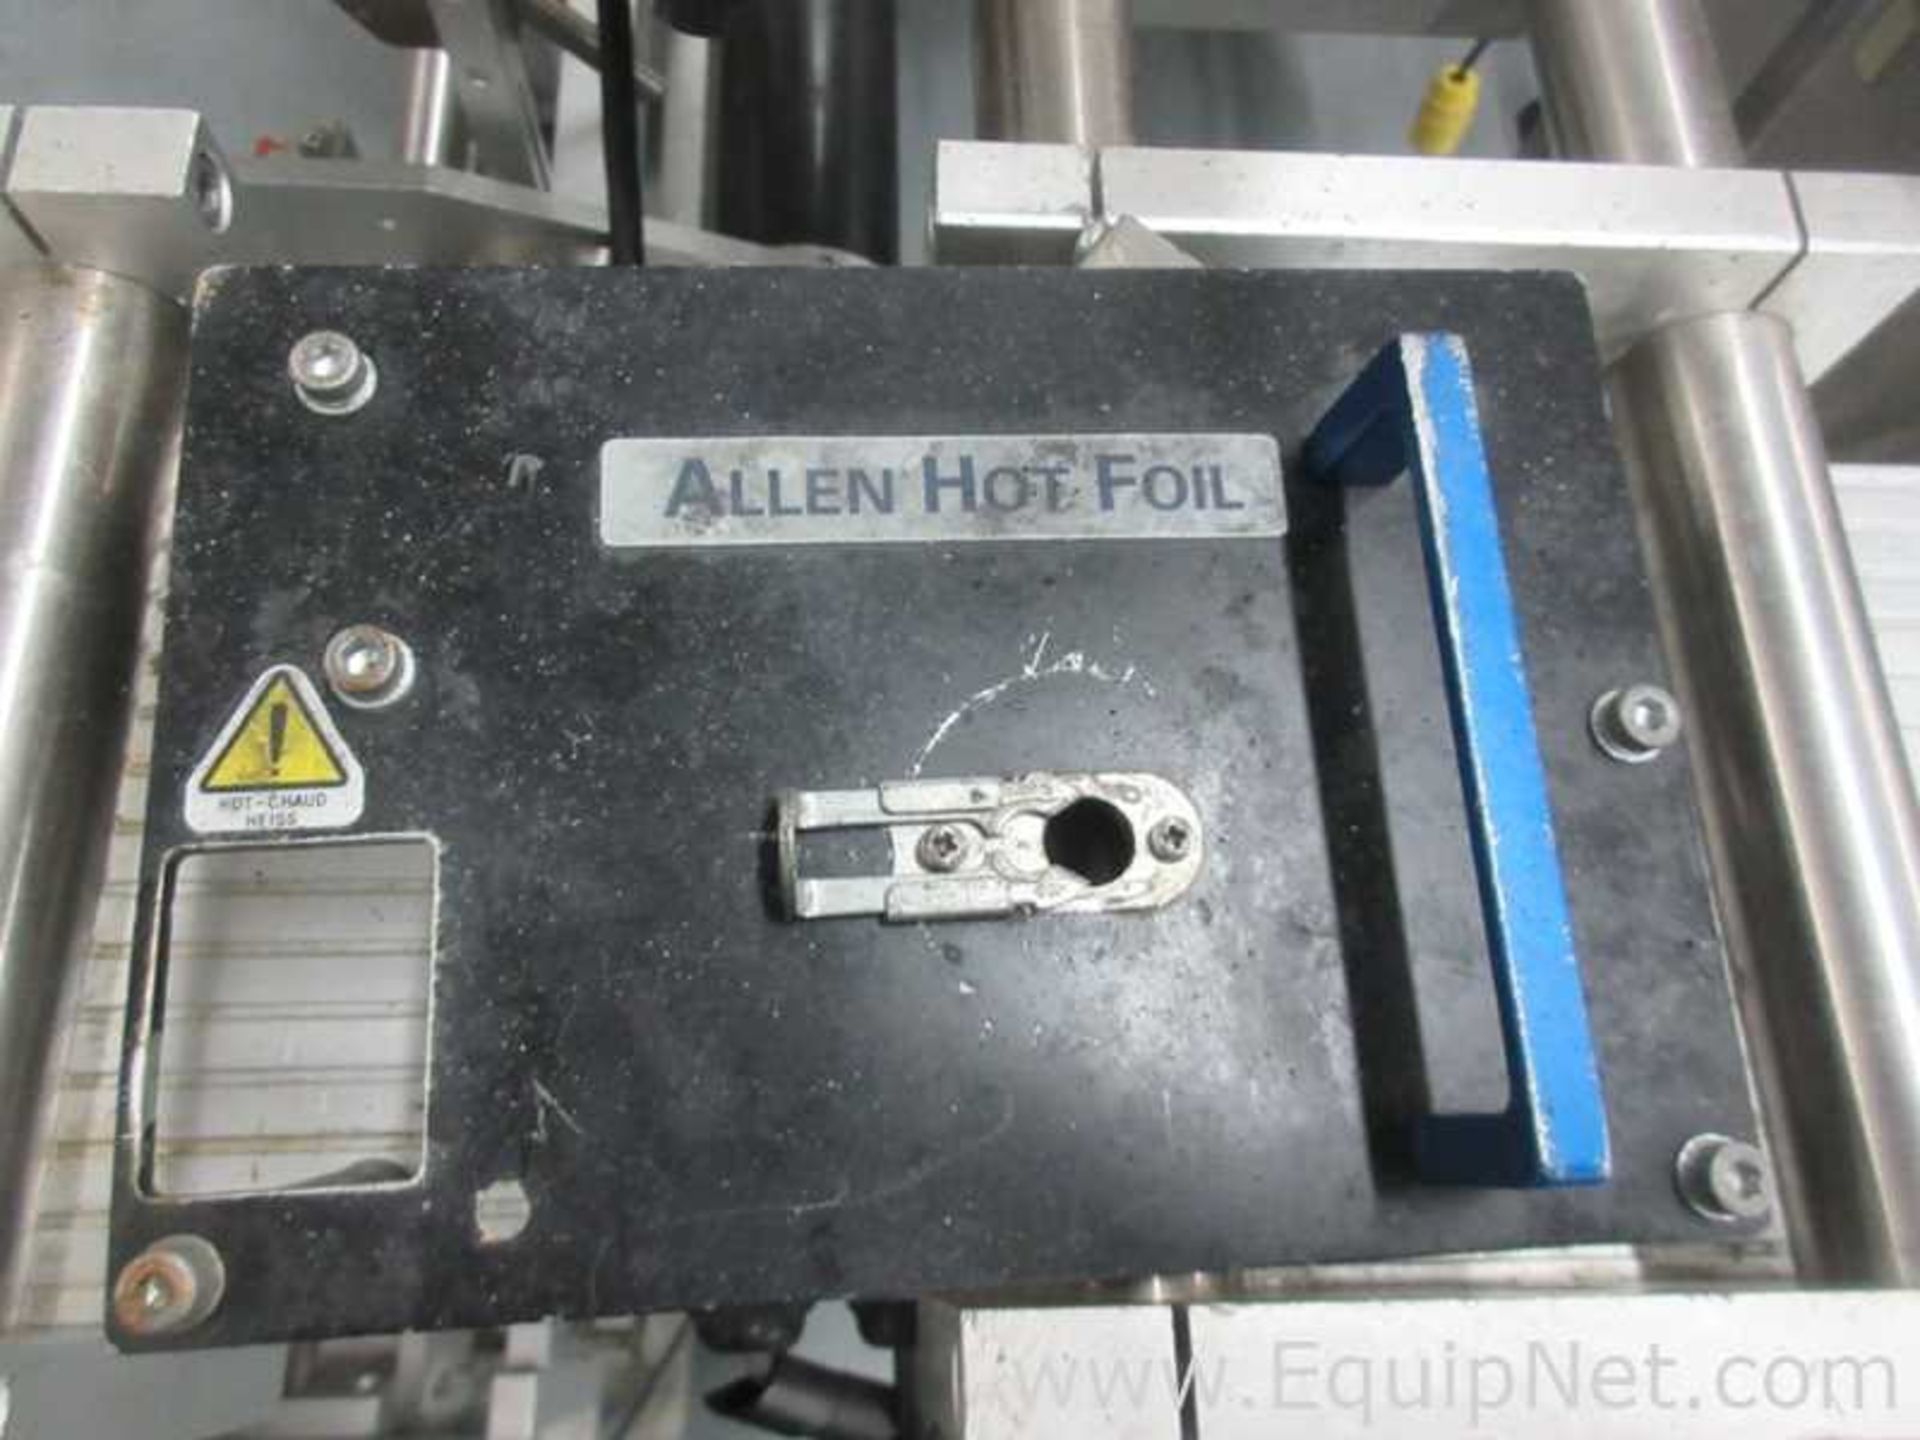 Pack Leader PRO-215D Labeler With Allen Hot Foil Printer - Image 11 of 16